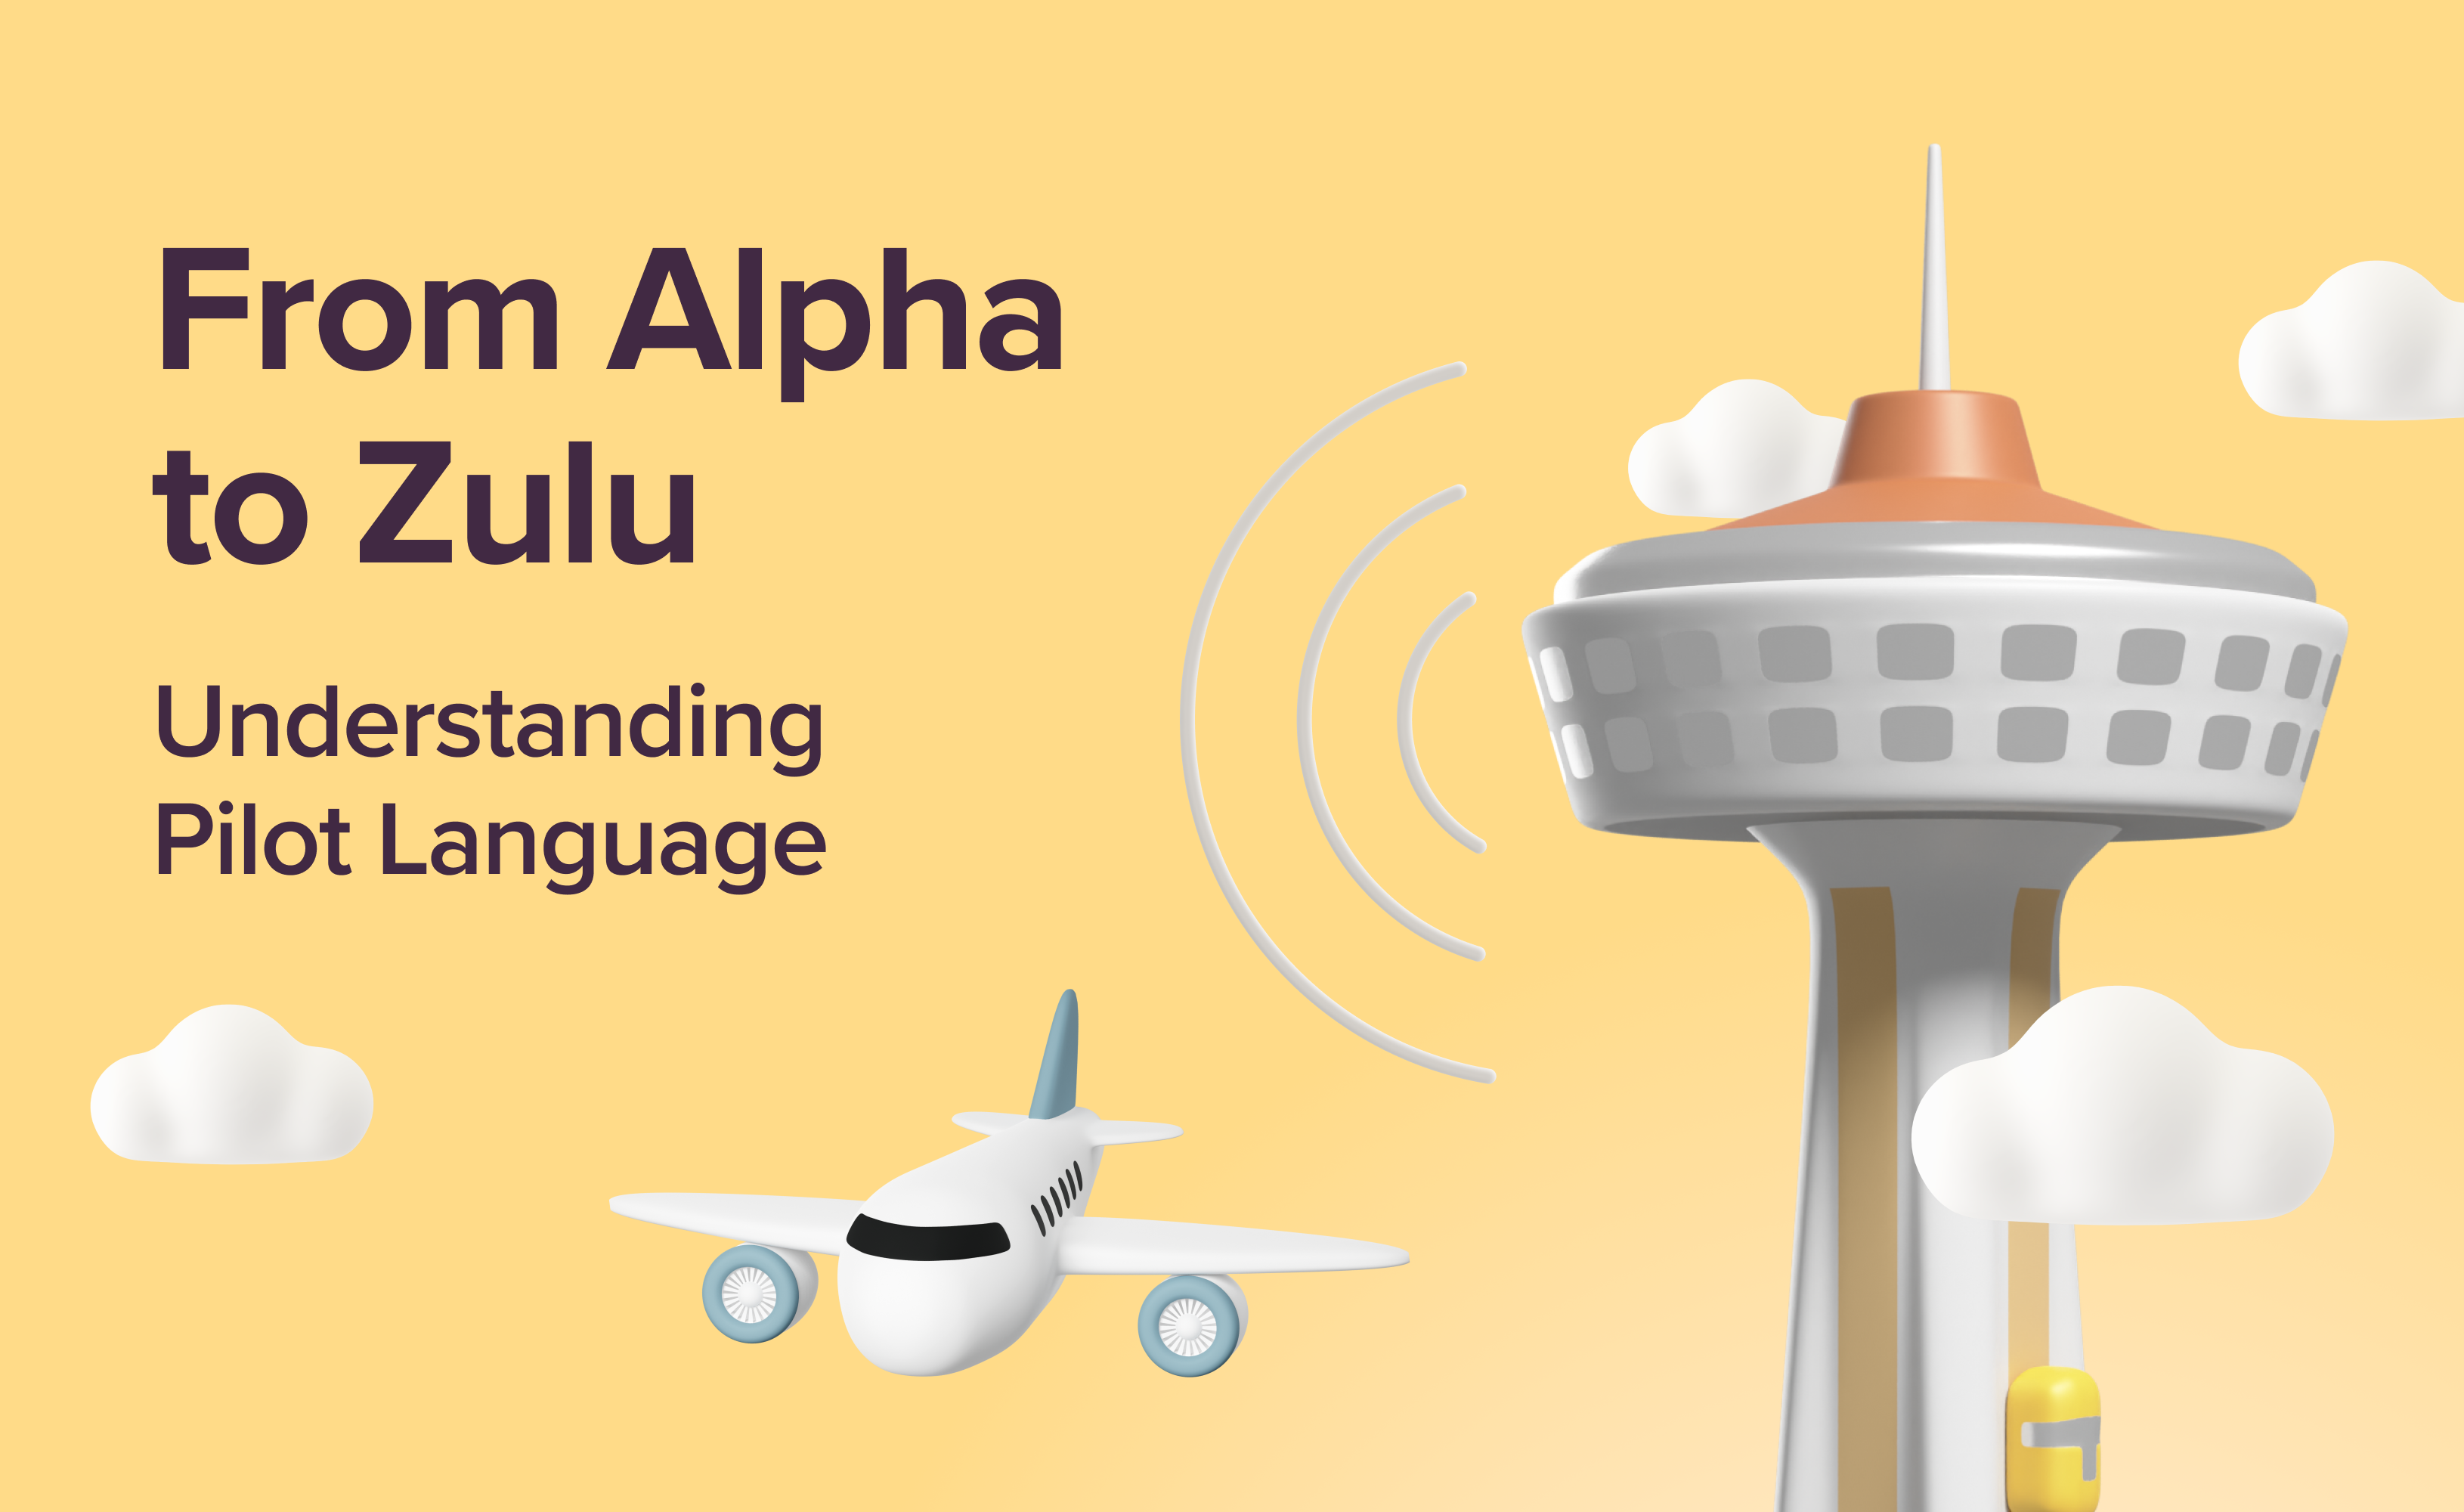 From Alpha to Zulu: Understanding Pilot Language